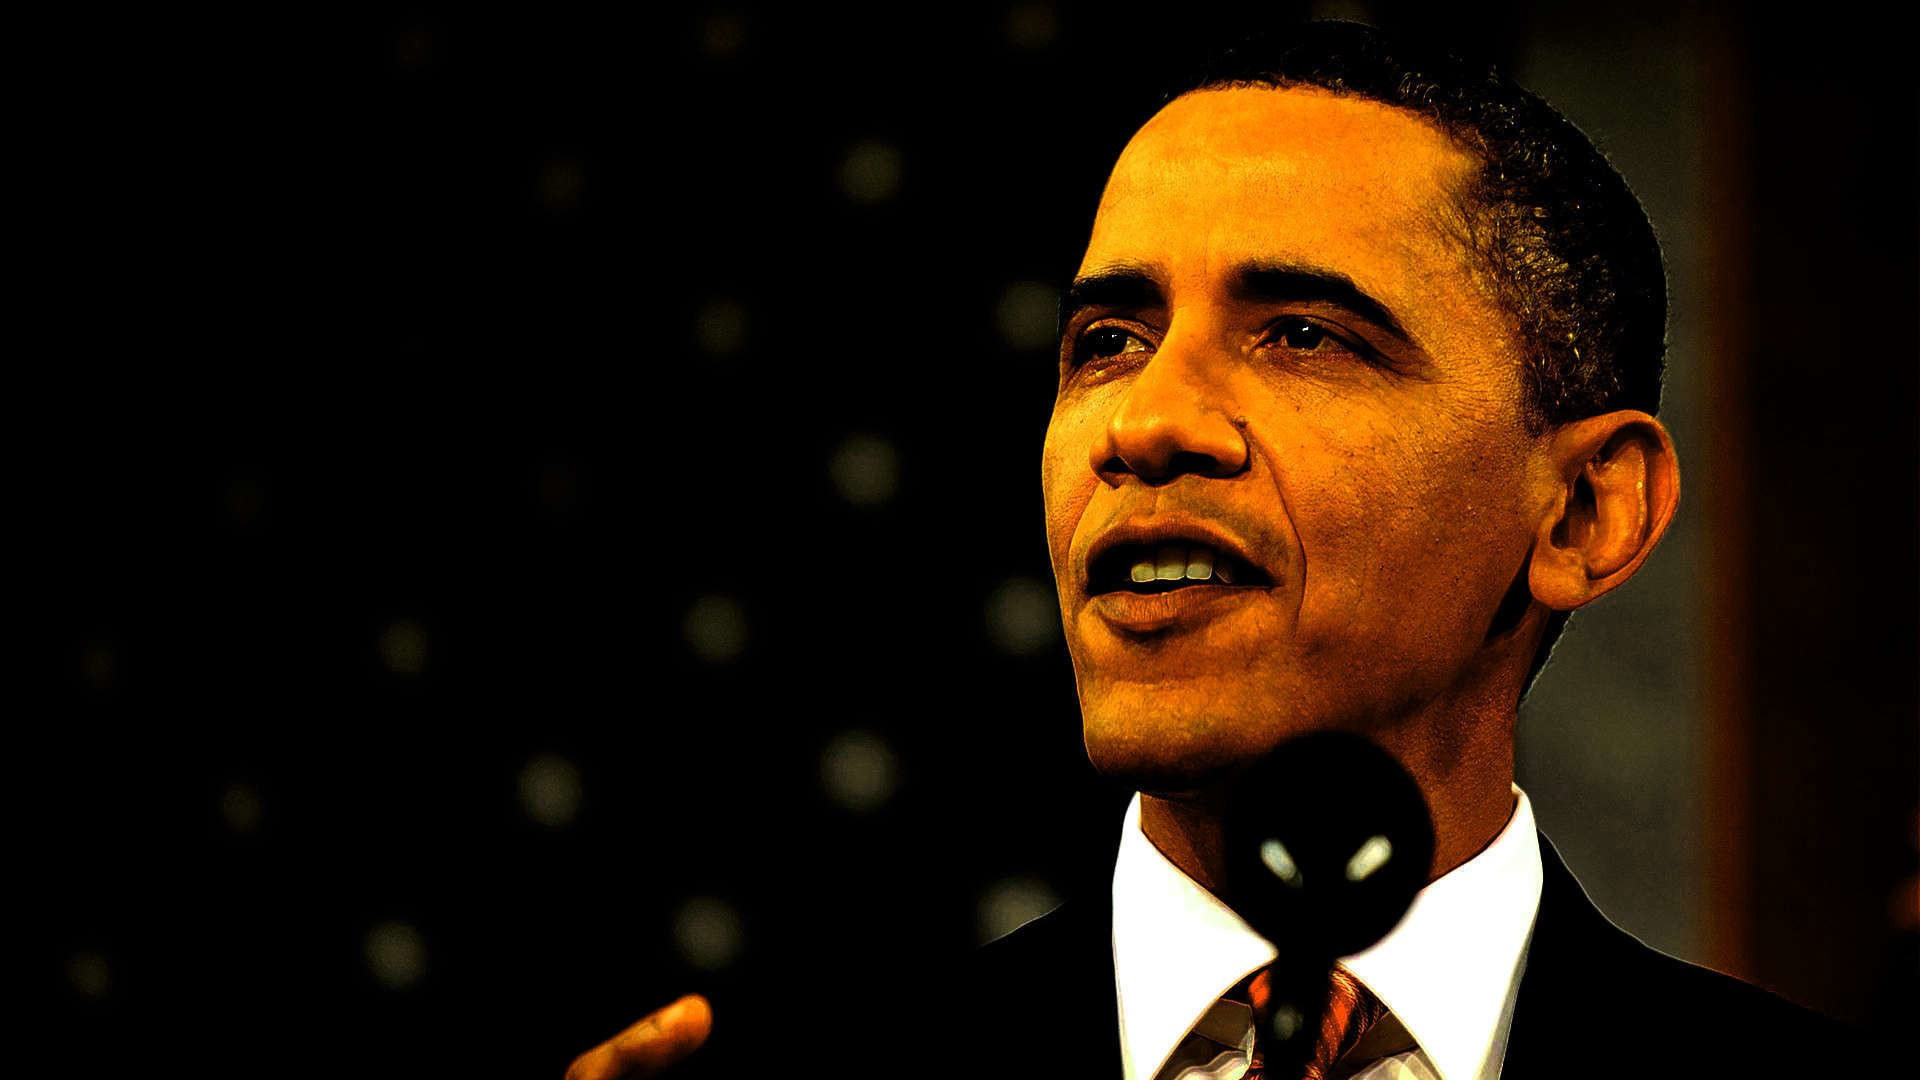 1920x1080  Wallpaper: Barack Obama Wallpaper. Upload at May 28, 2014 by Mark  .